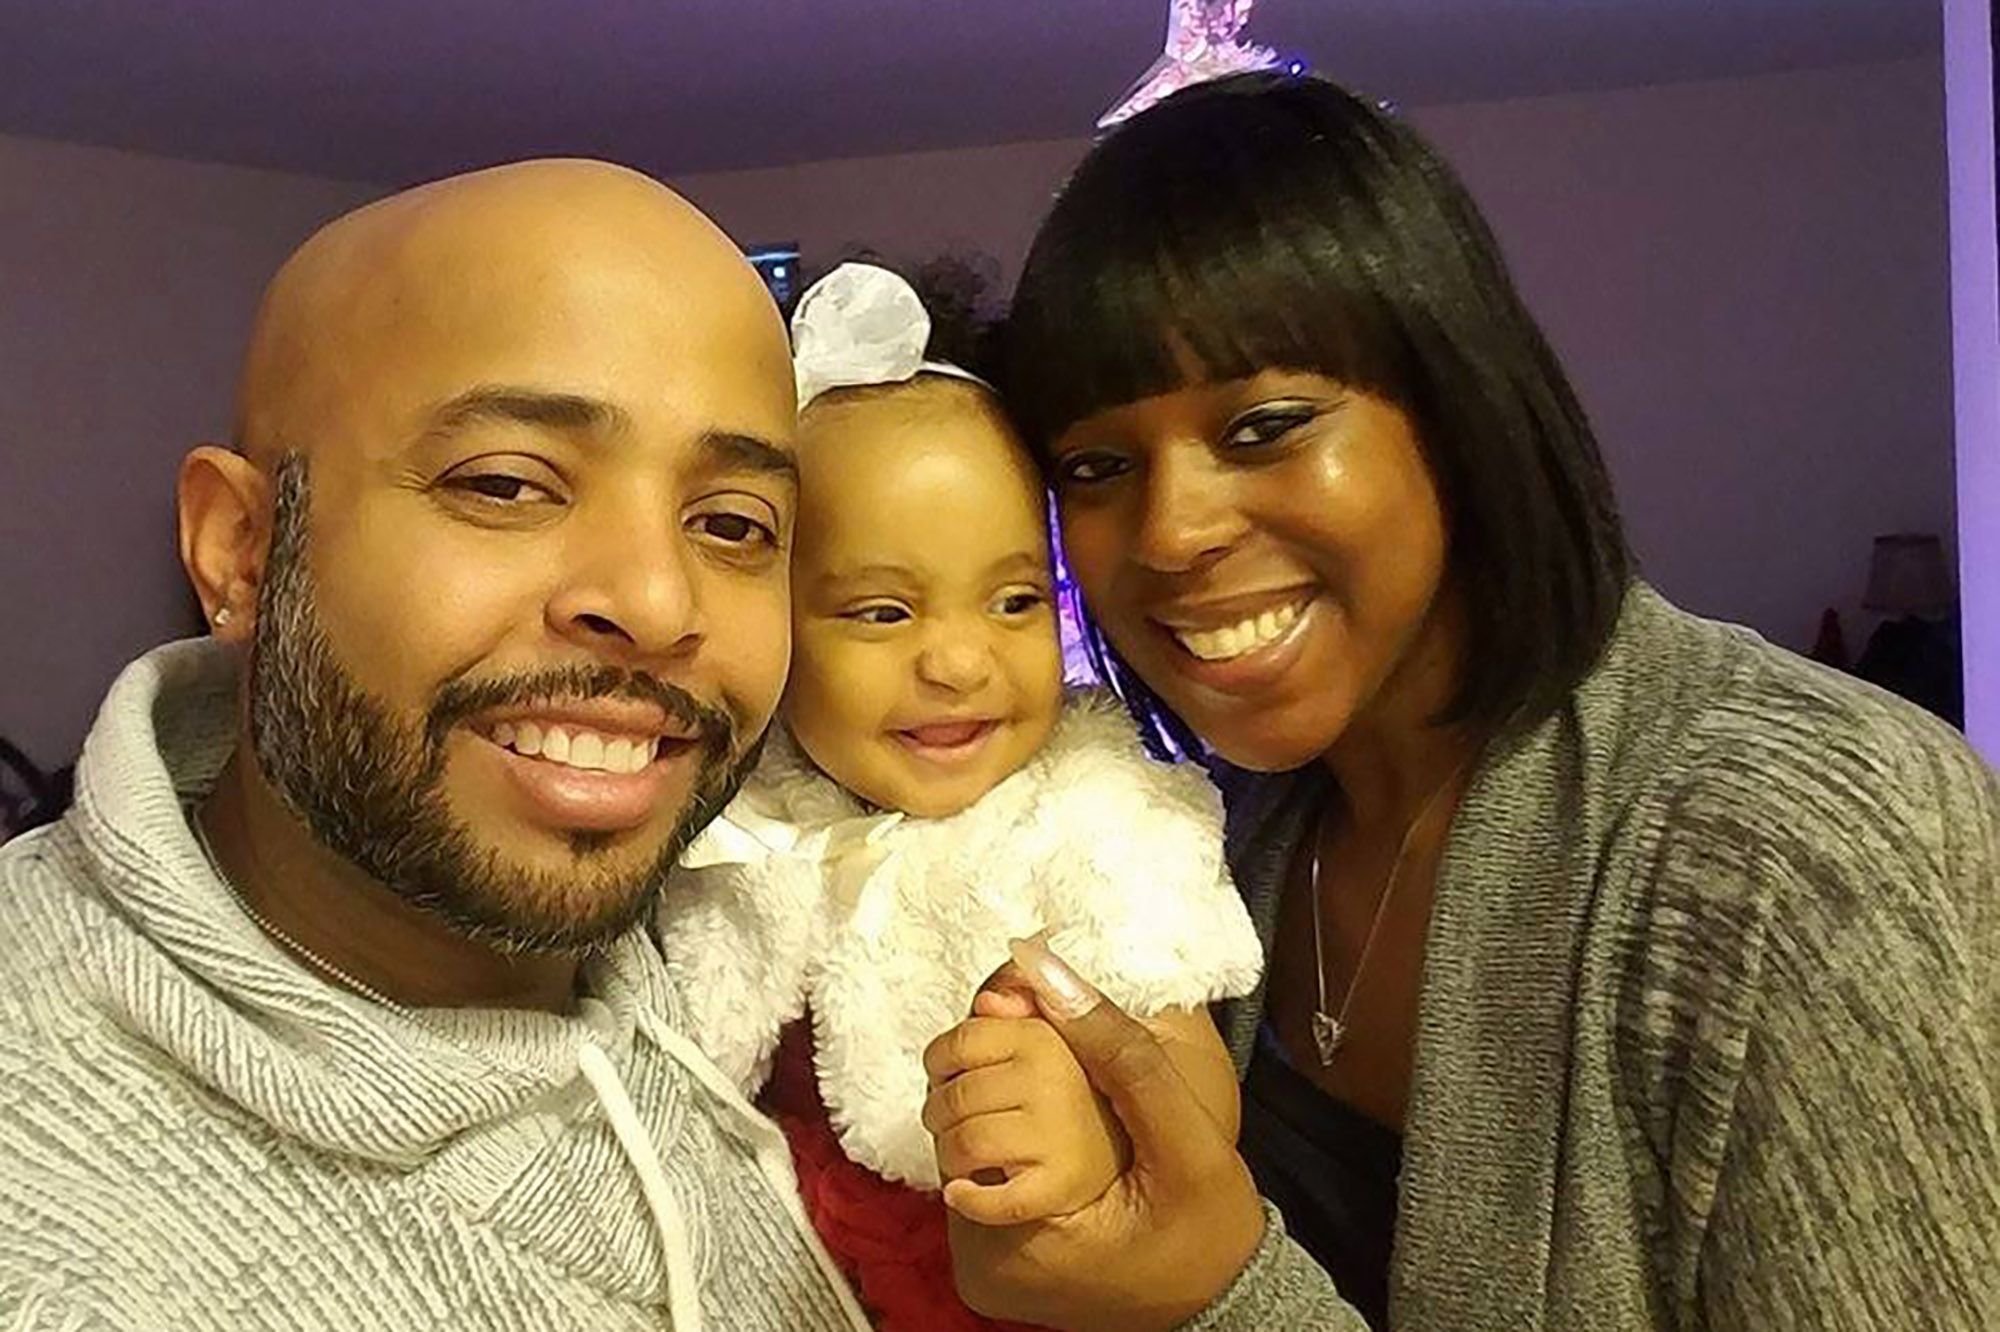 Aunt of toddler burned alive in car: I hope her dad 